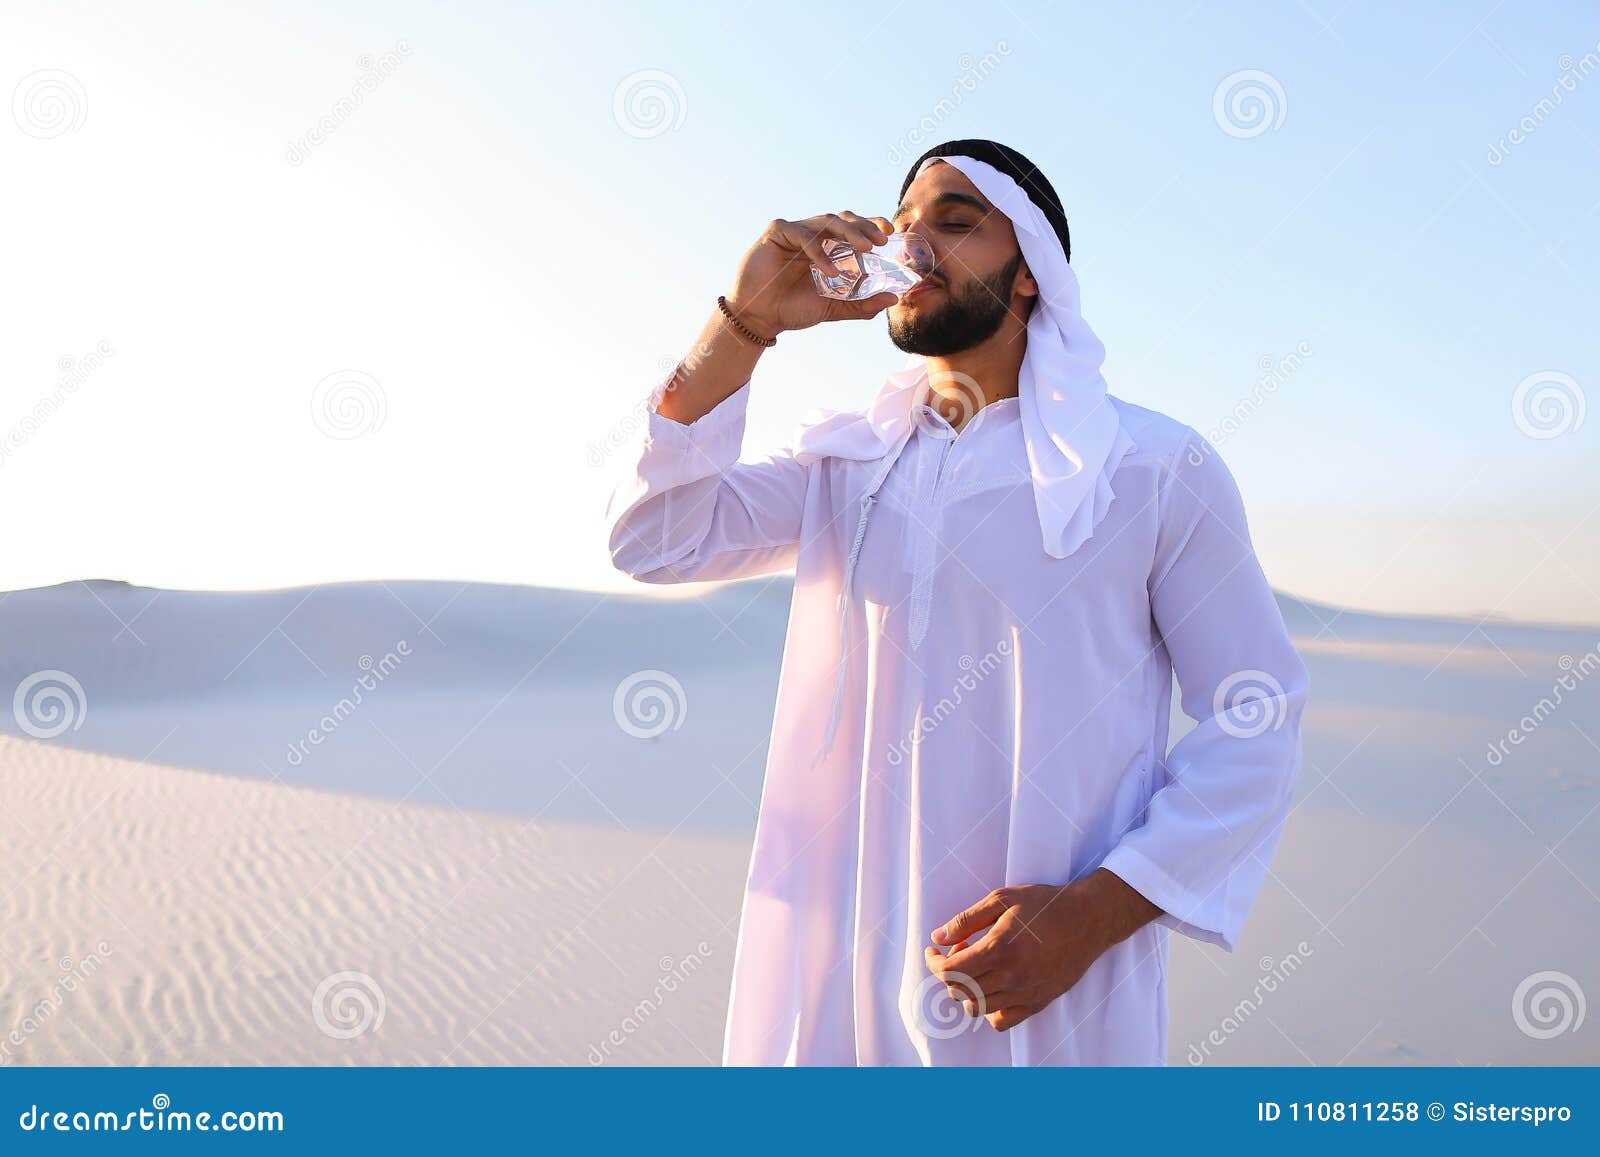 Пить воду в исламе. Что пьют арабы. Мужчина мусульманин. Мусульманская вода. Араб в пустыне пьет чай.